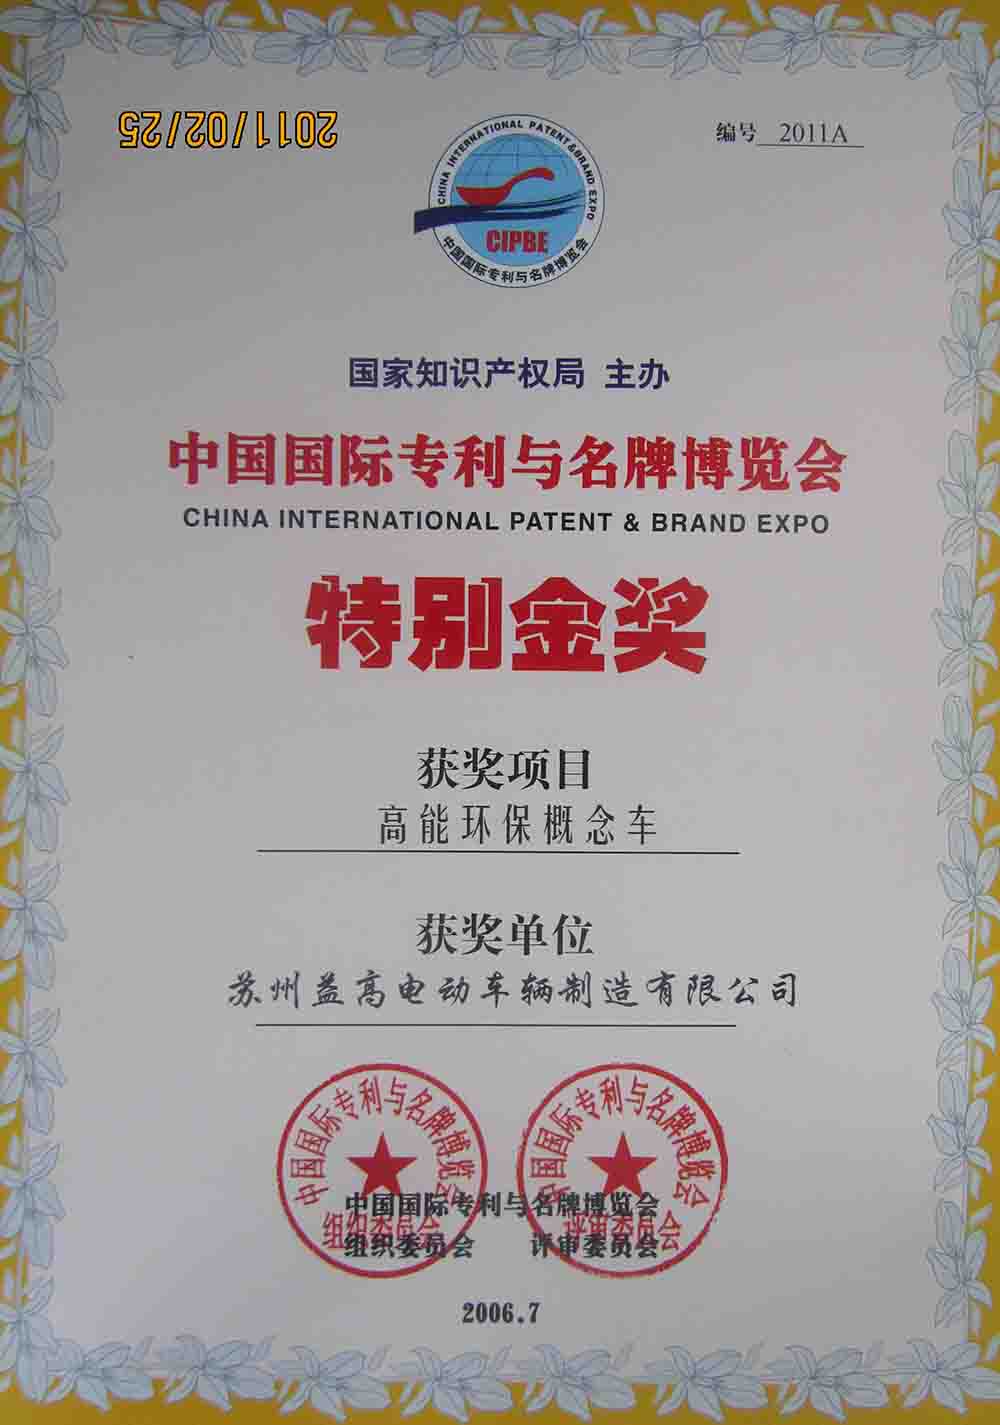 中国国际专利与名牌博览会 特别金奖